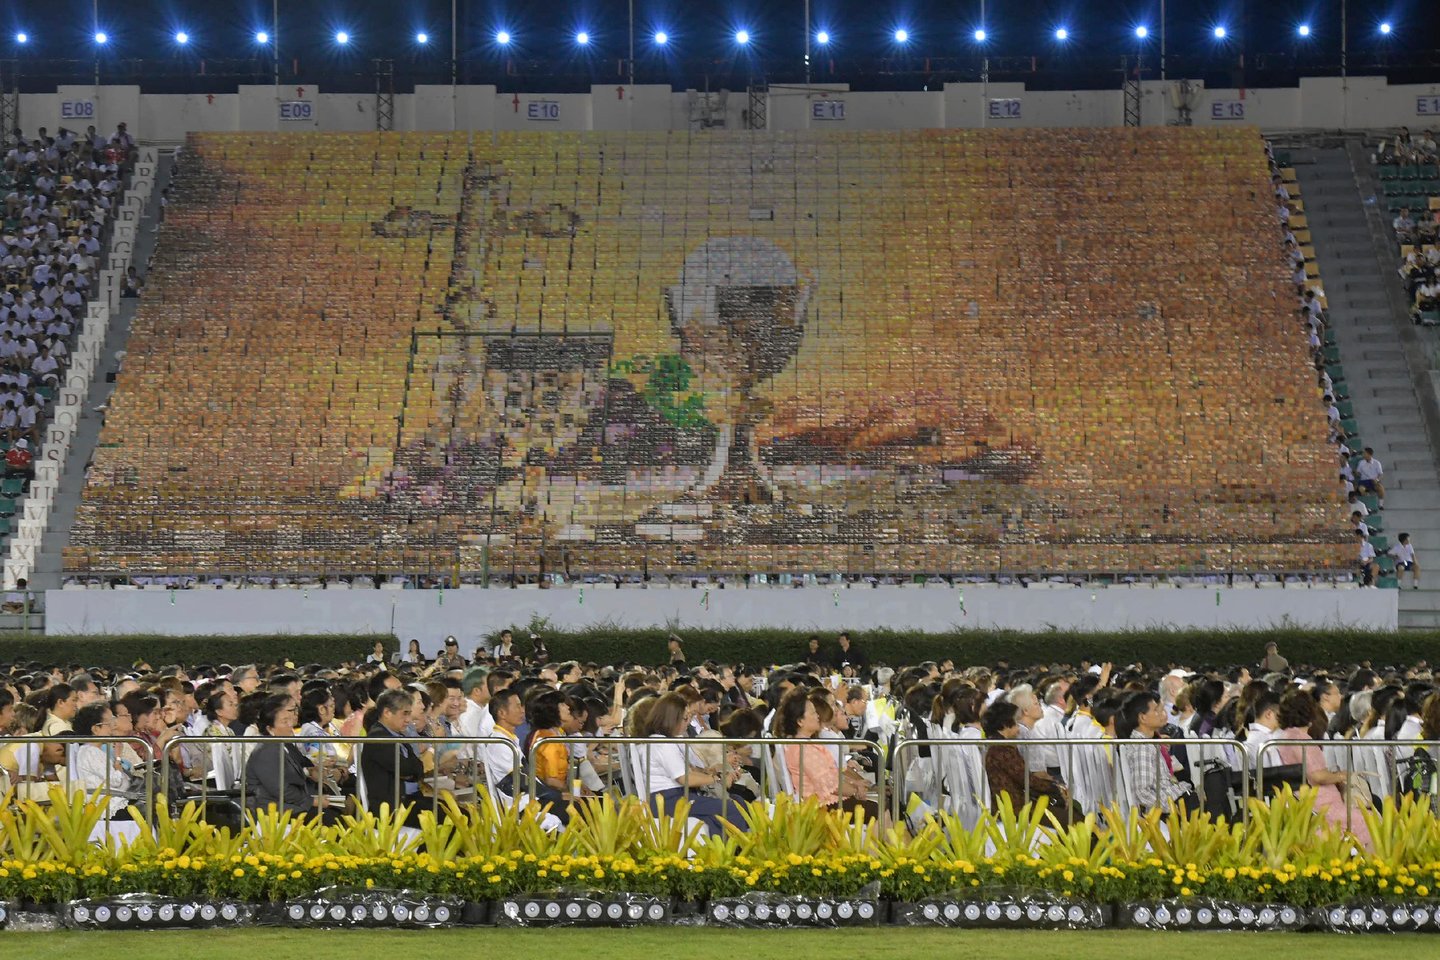   Popiežius Pranciškus ketvirtadienį per mišias sausakimšame Bankoko stadione paragino dešimtis tūkstančių jose dalyvaujančių atsidavusių maldininkų gerbti prostitutes ir prekybos žmonėmis aukas.<br>AFP/Scanpix nuotr.